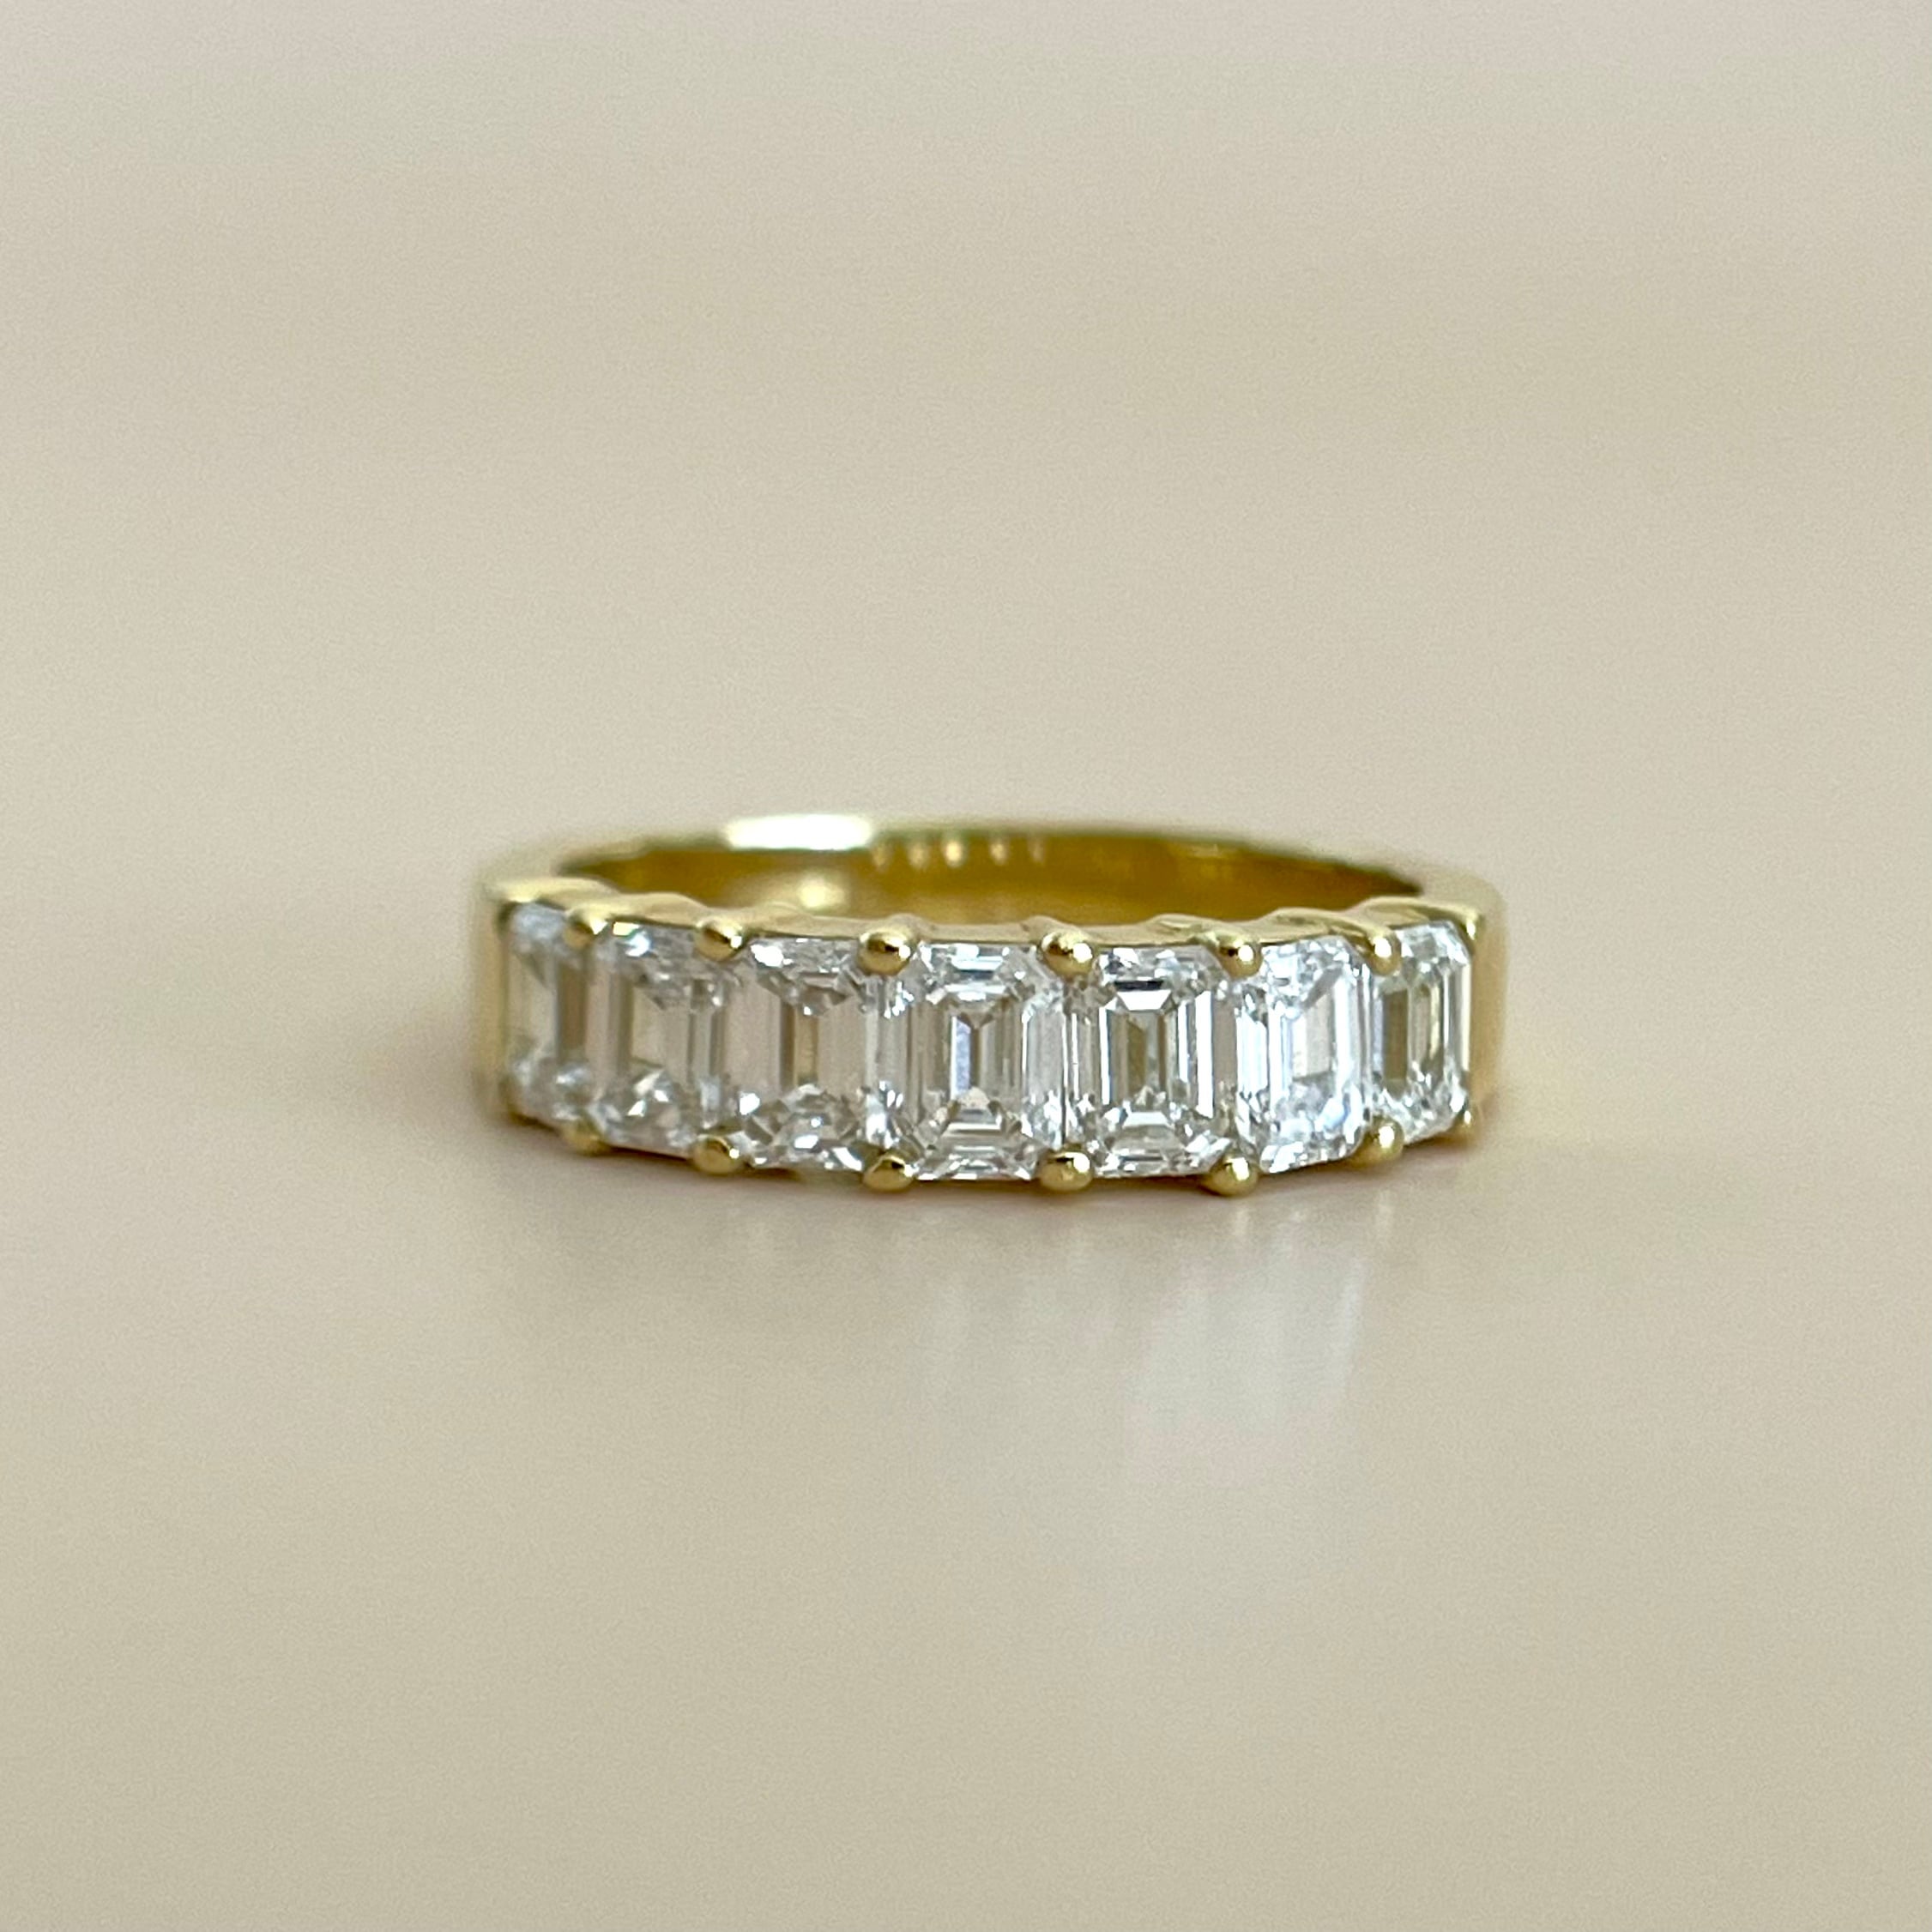 Emerald cut diamond | cheka Diamond & Jewelry